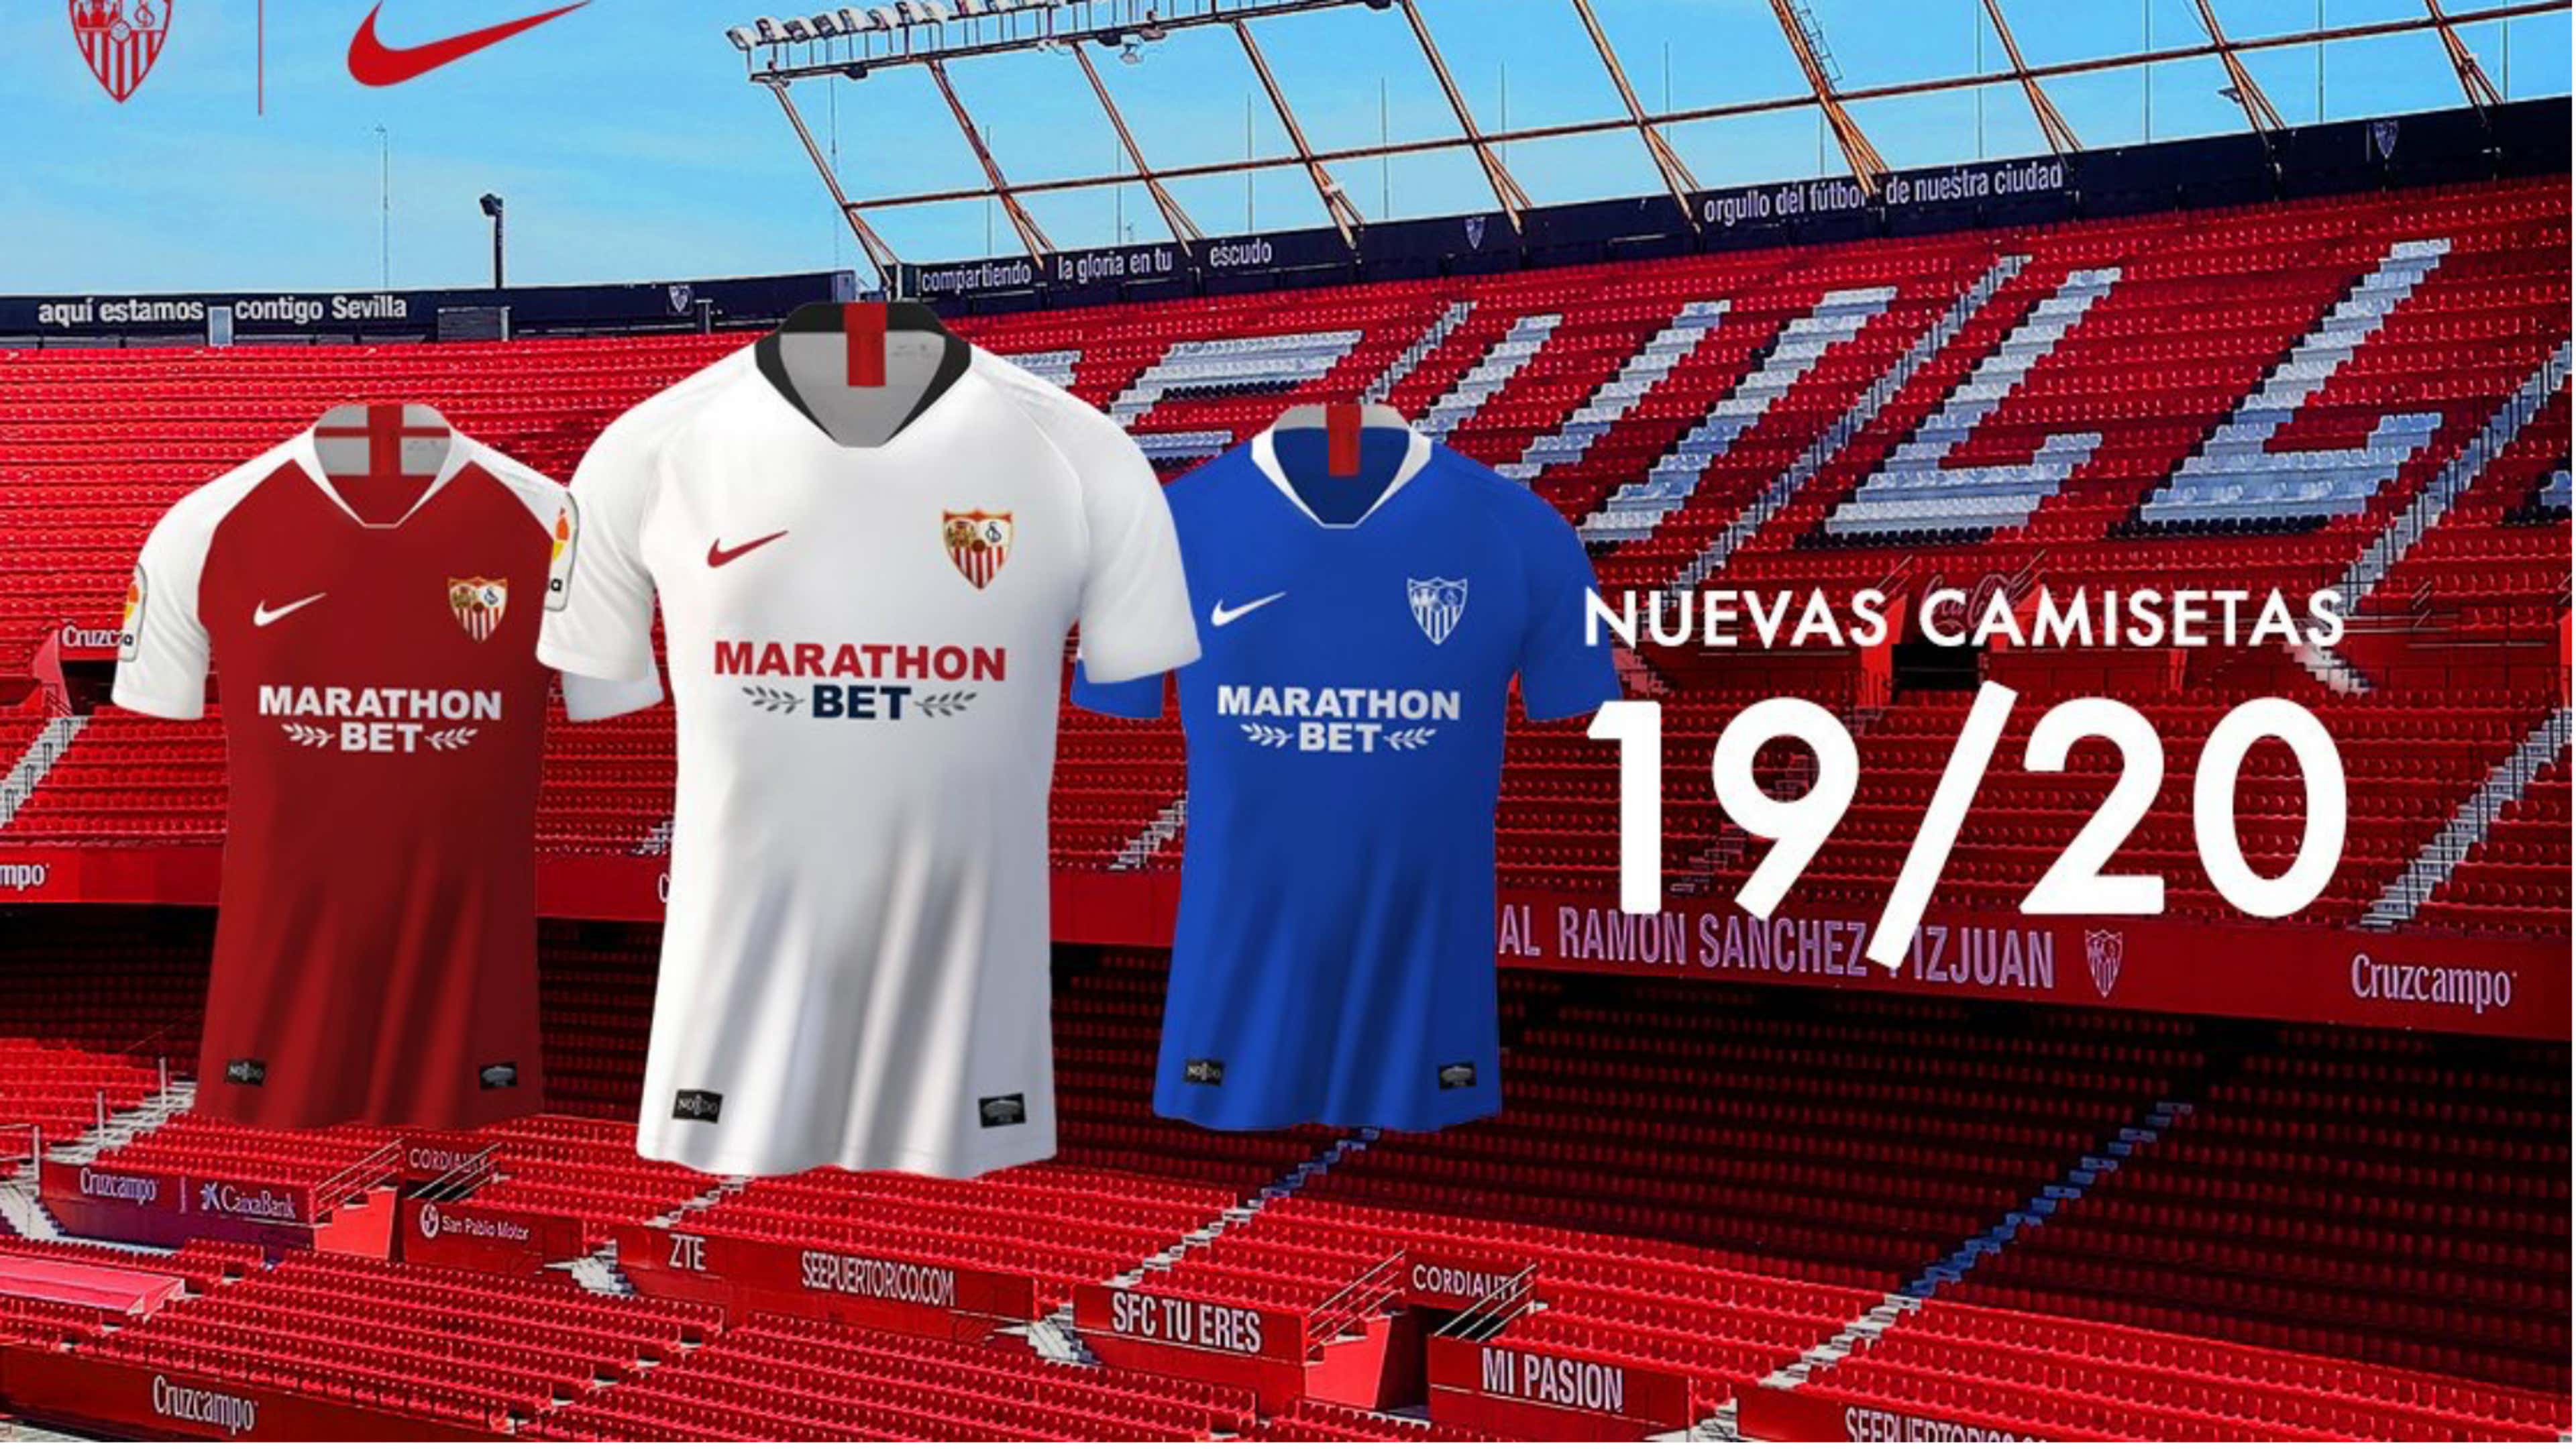 El Sevilla presenta sus nuevas camisetas para la temporada 2019-2020 con Marathon Bet como nuevo patrocinador | Goal.com Espana